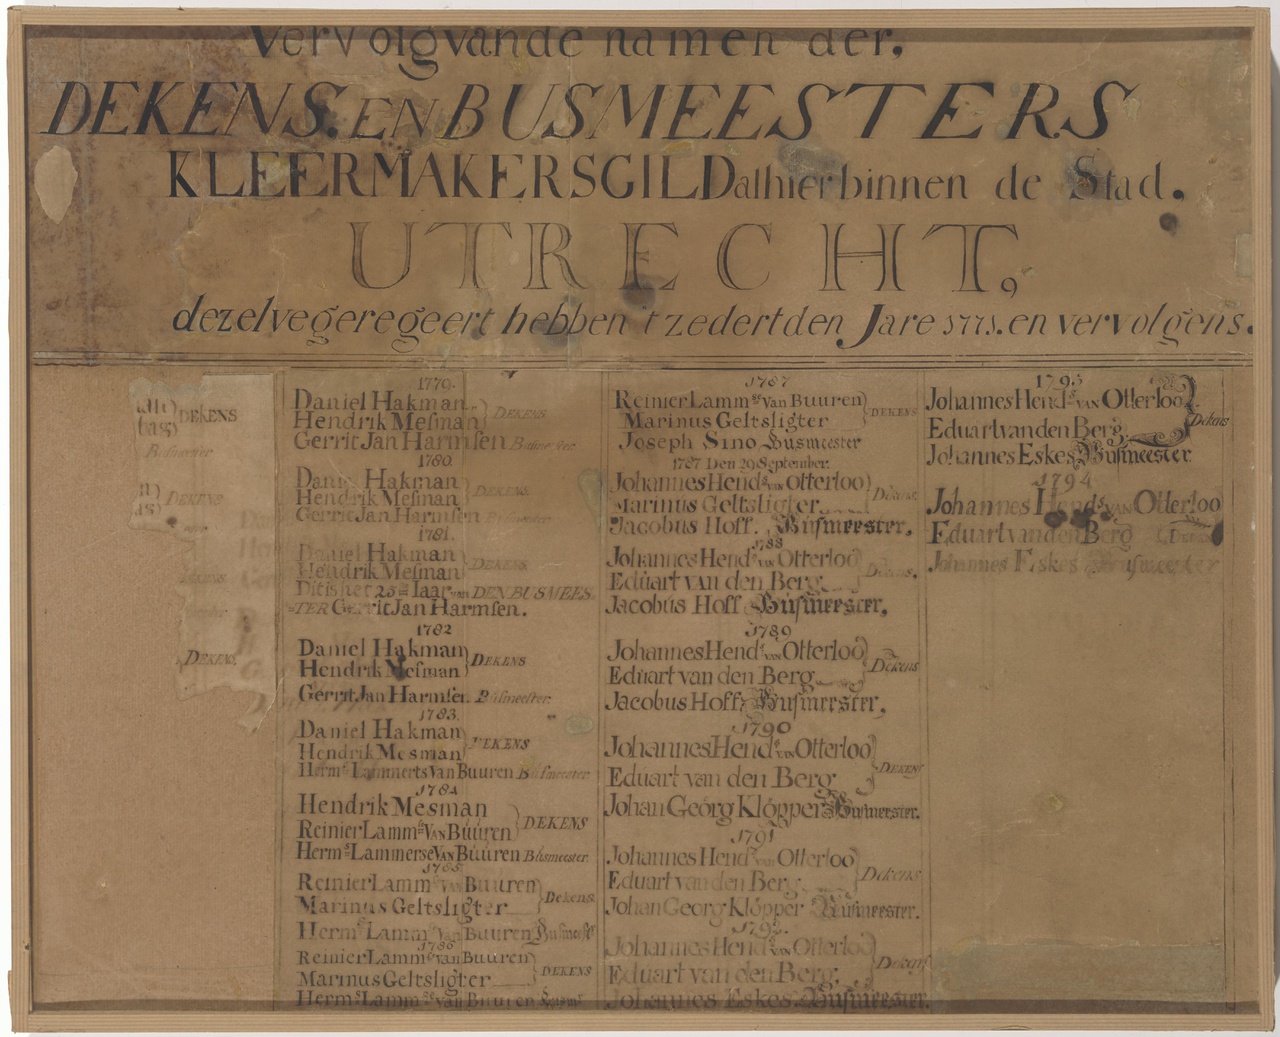 Naambord van de dekens en busmeesters van het Kleermakersgilde over 1771-1781